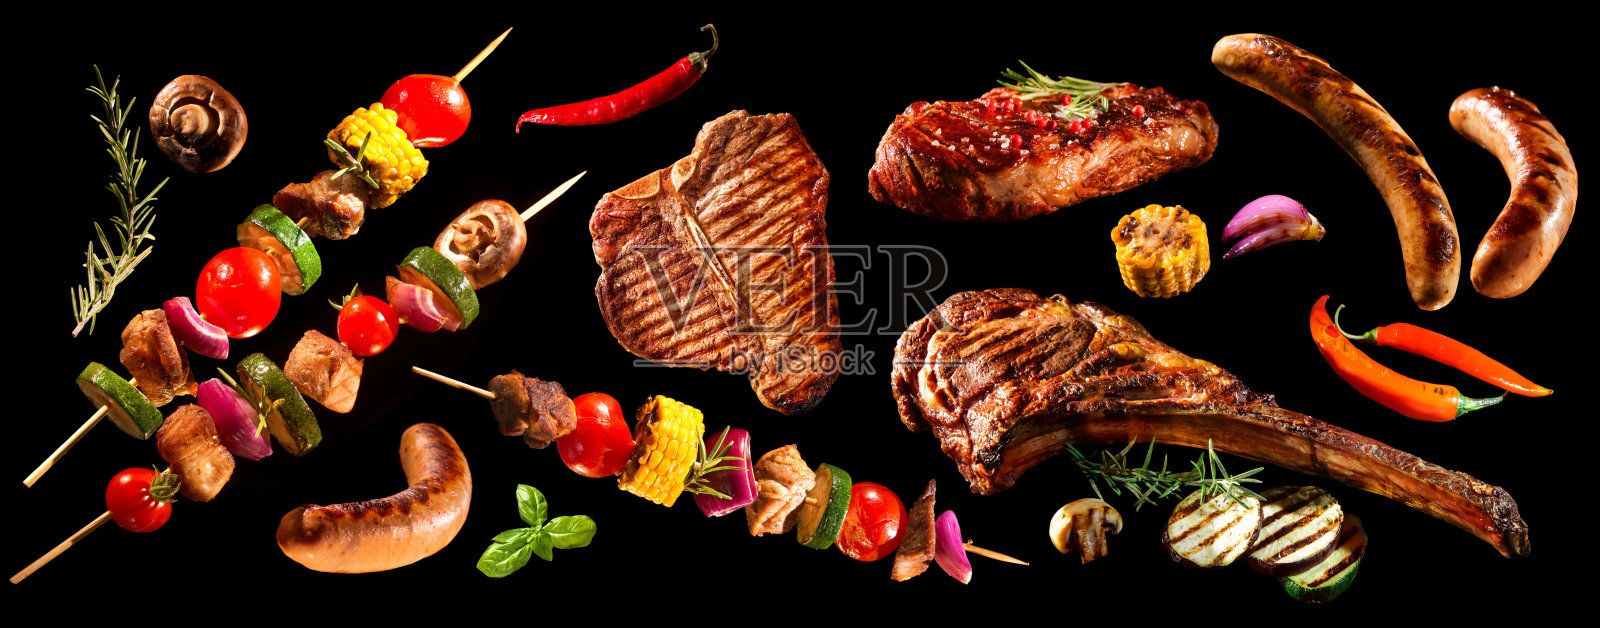 各种烤肉和蔬菜的拼贴画照片摄影图片